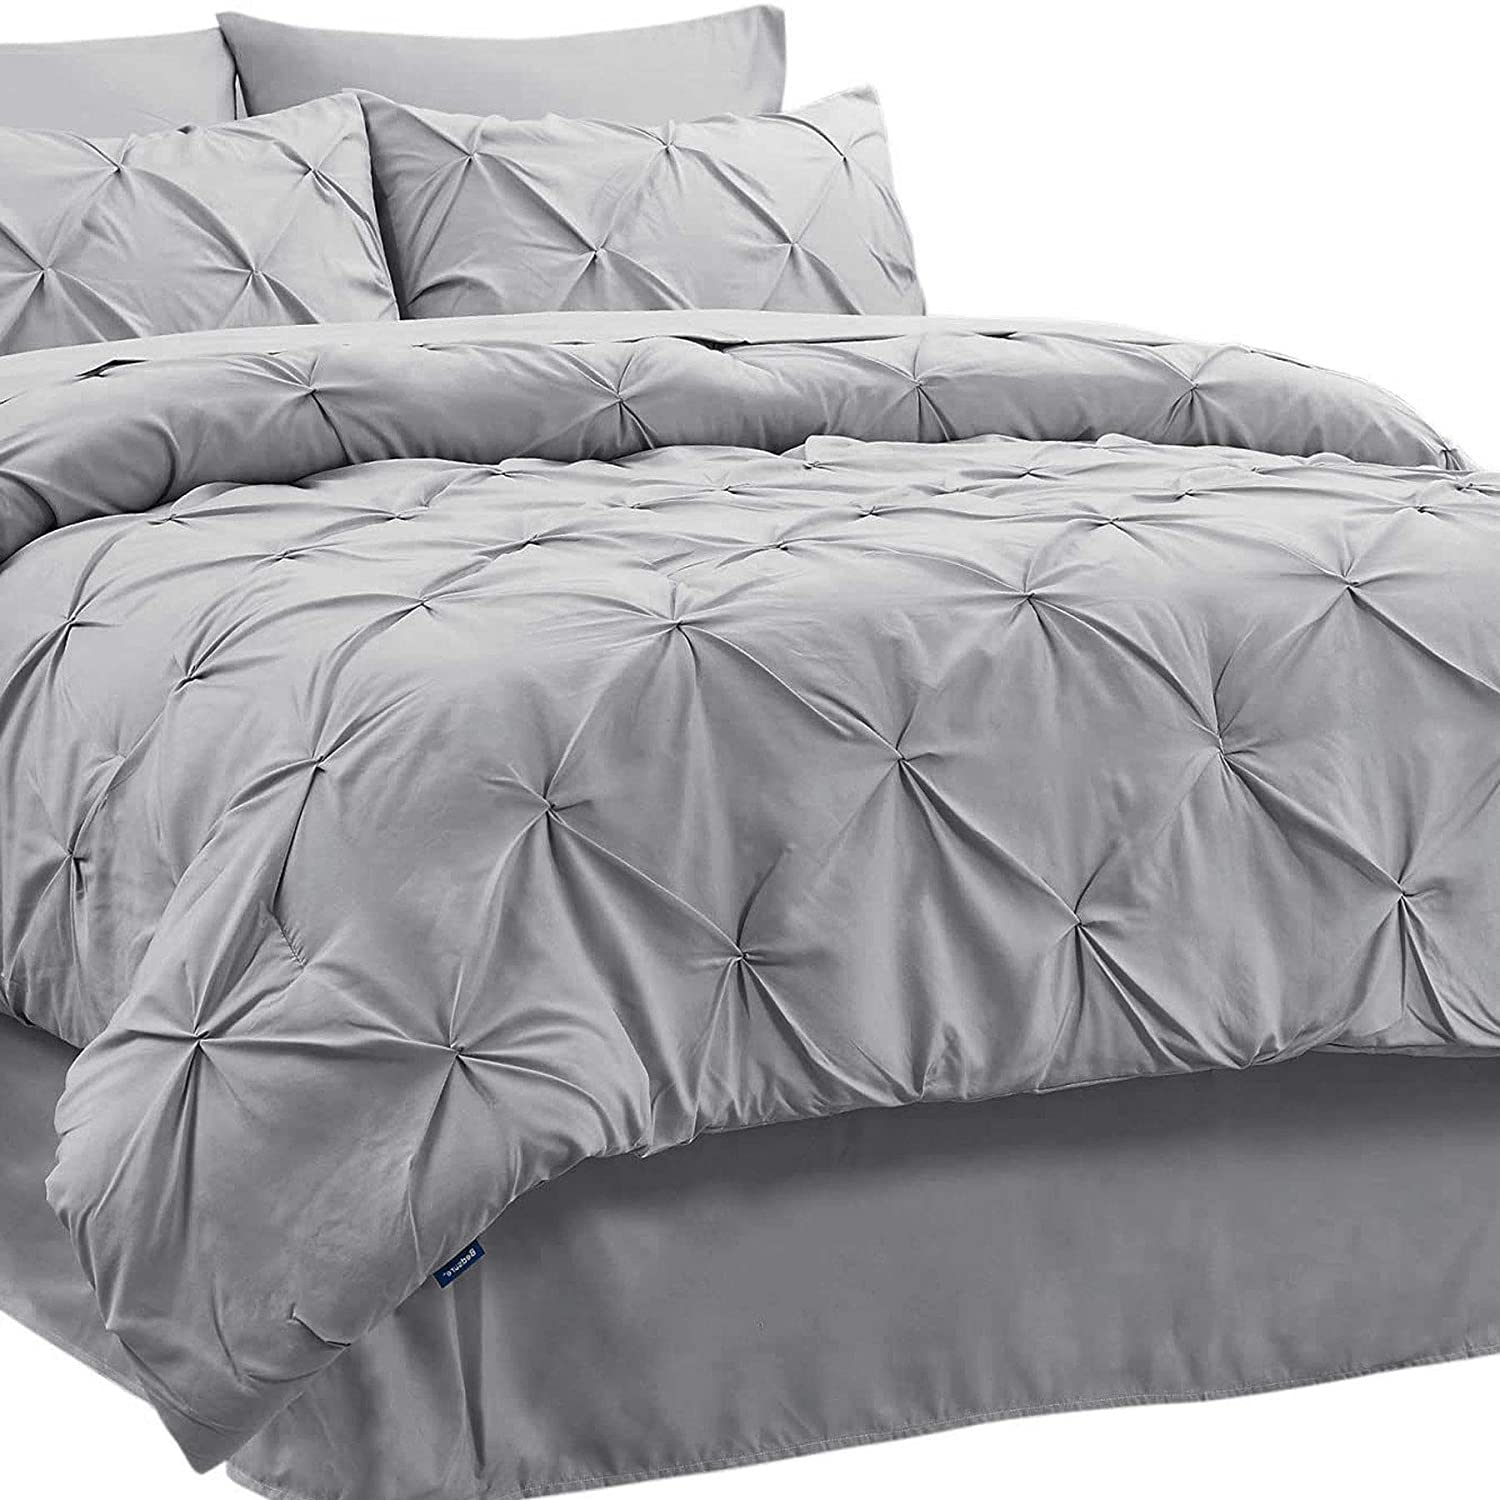 Bedsure Pinch Pleat Queen Comforter Set